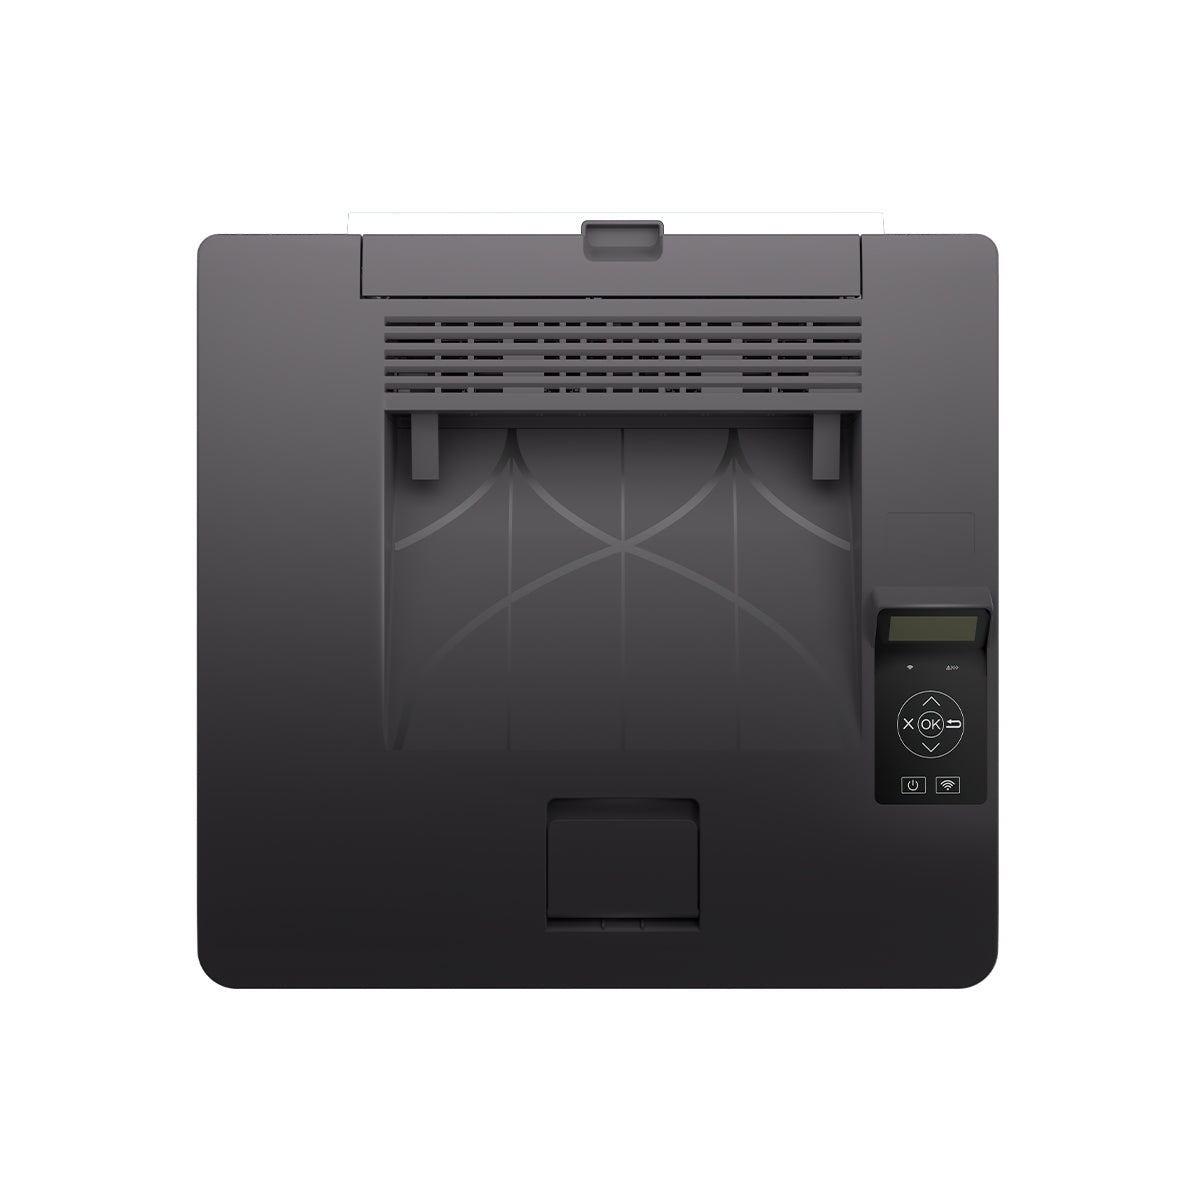 Impresora Pantum Cp1100Dw, Ppm 19 Negro / 18 Color, Laser Color, Usb, Wifi, Ethernet Red, Duplex